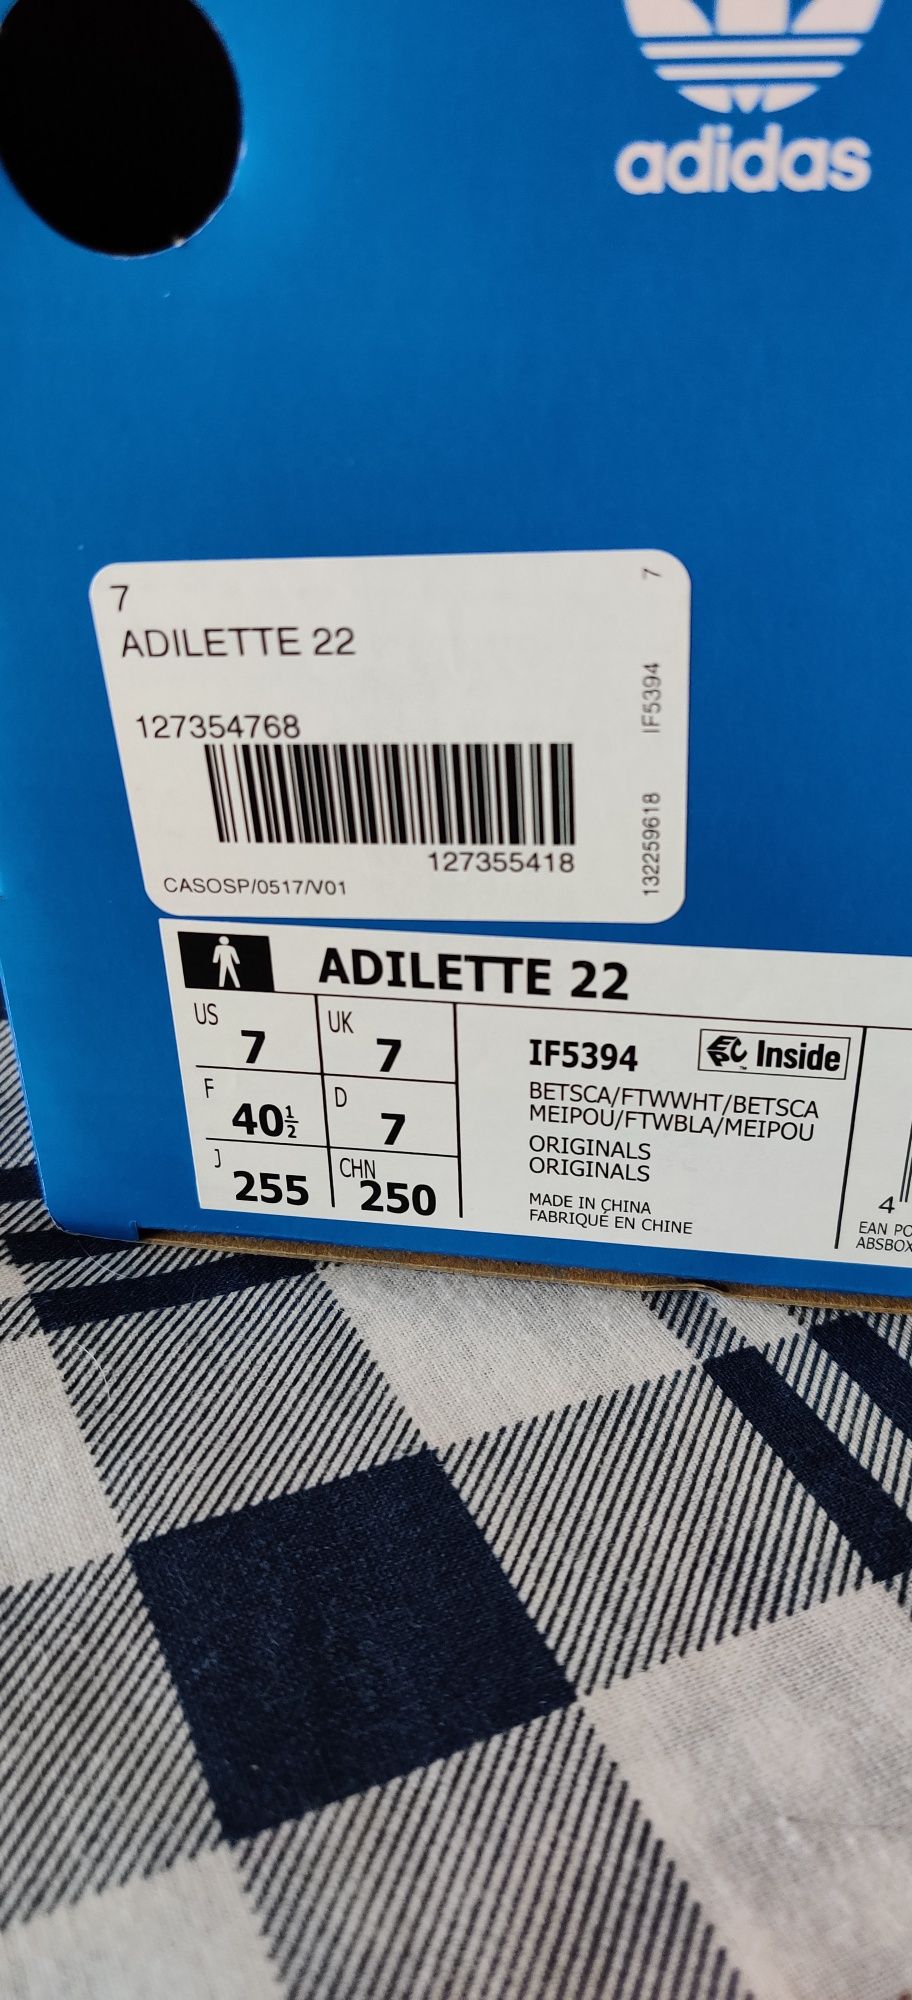 Adidas Slides Adilette 22 Deep red 40.5